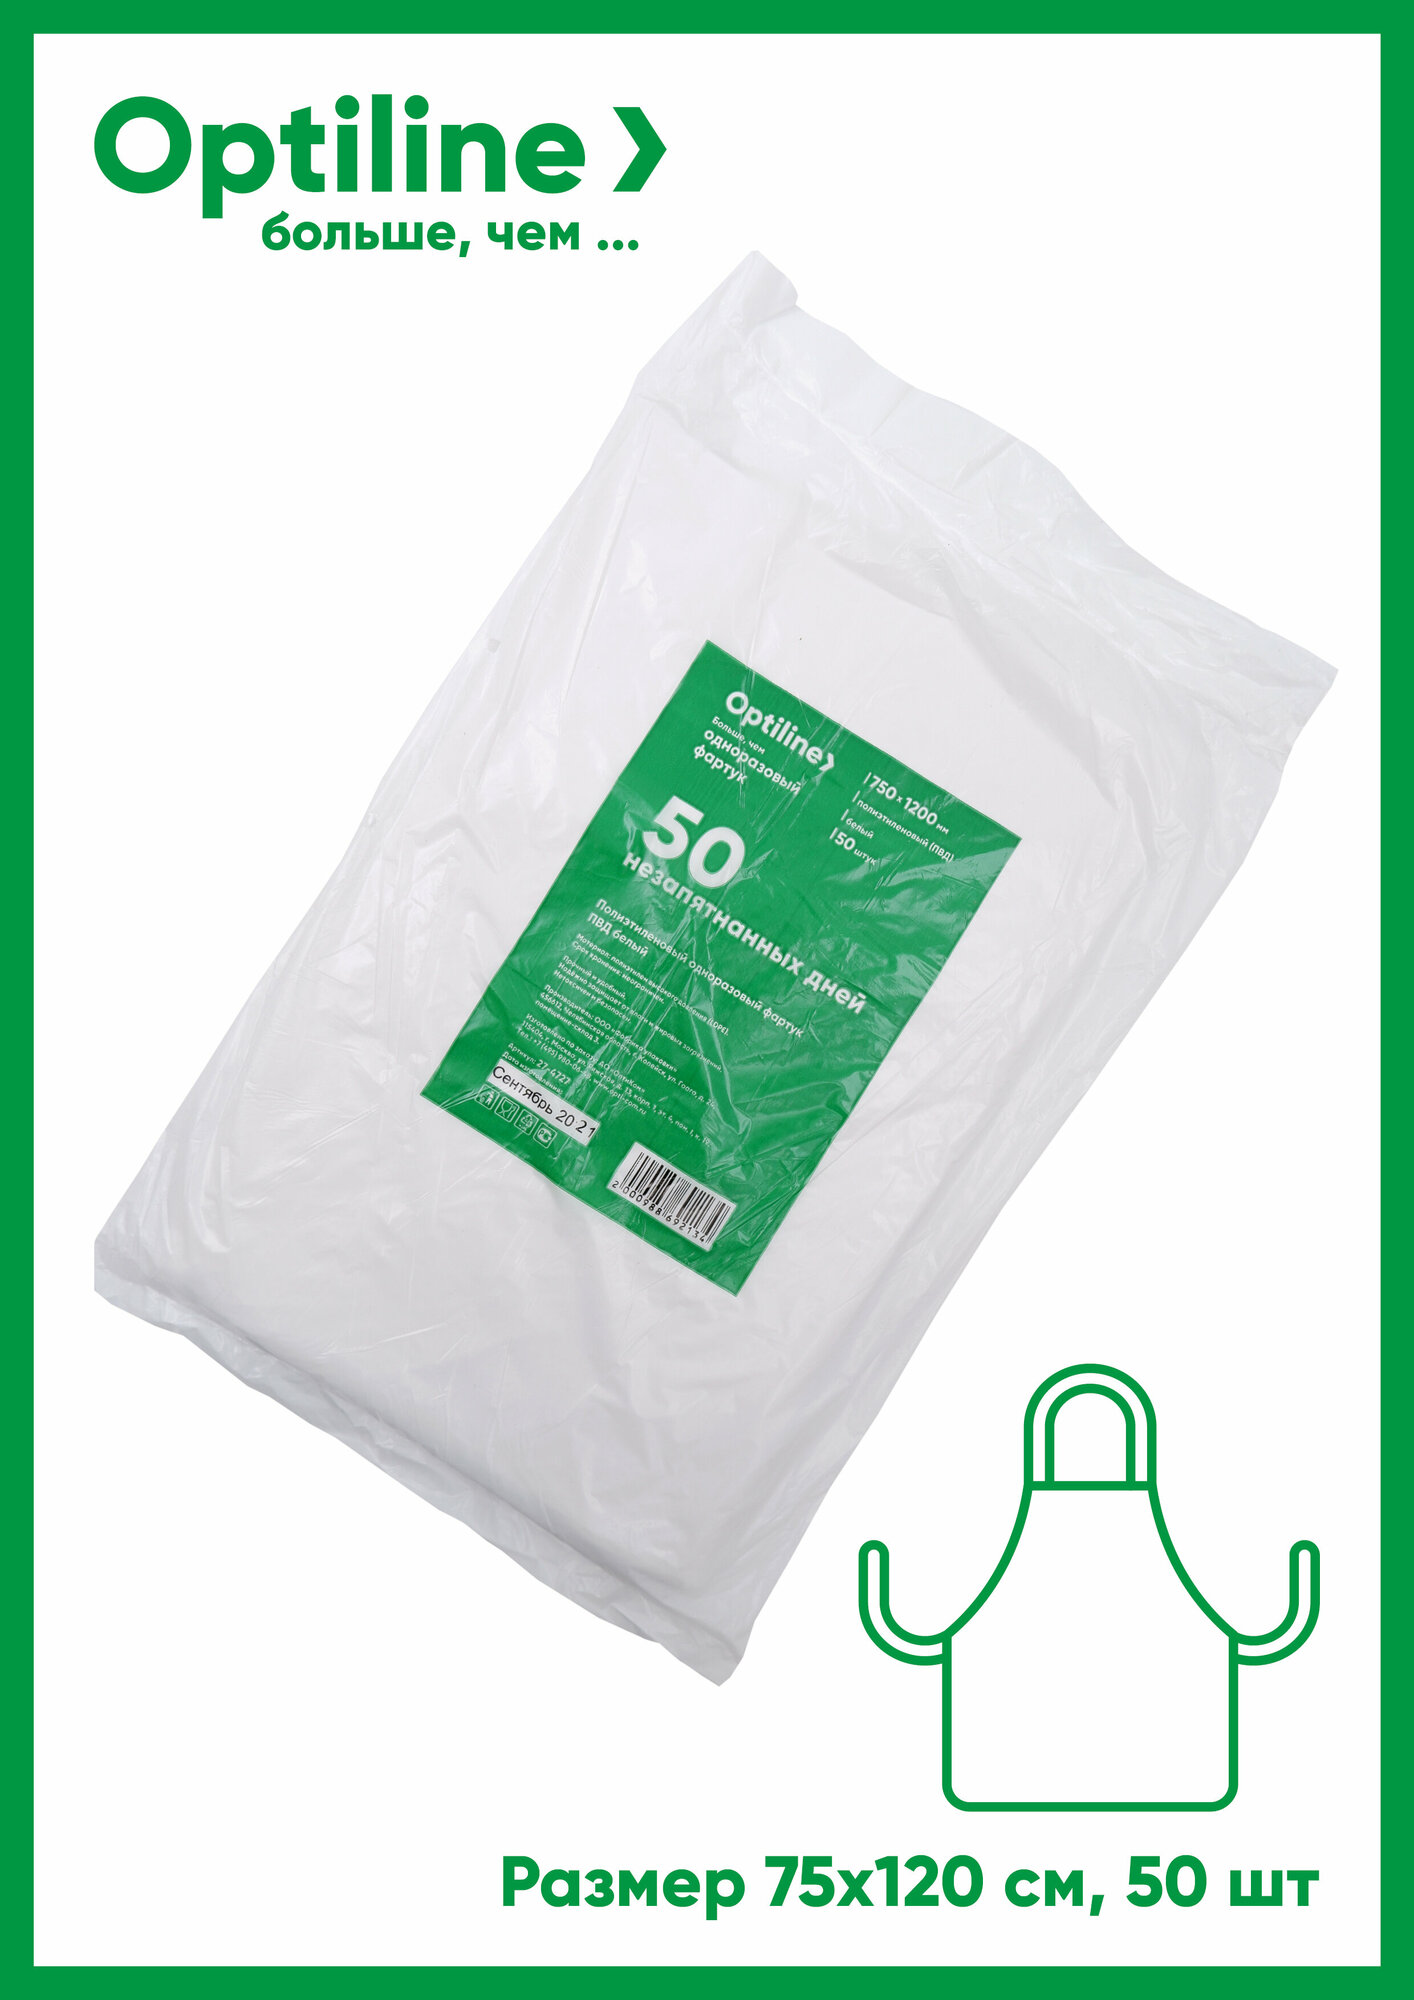 Фартук одноразовый полиэтилен, универсальный белый 50шт в упаковке, Optiline